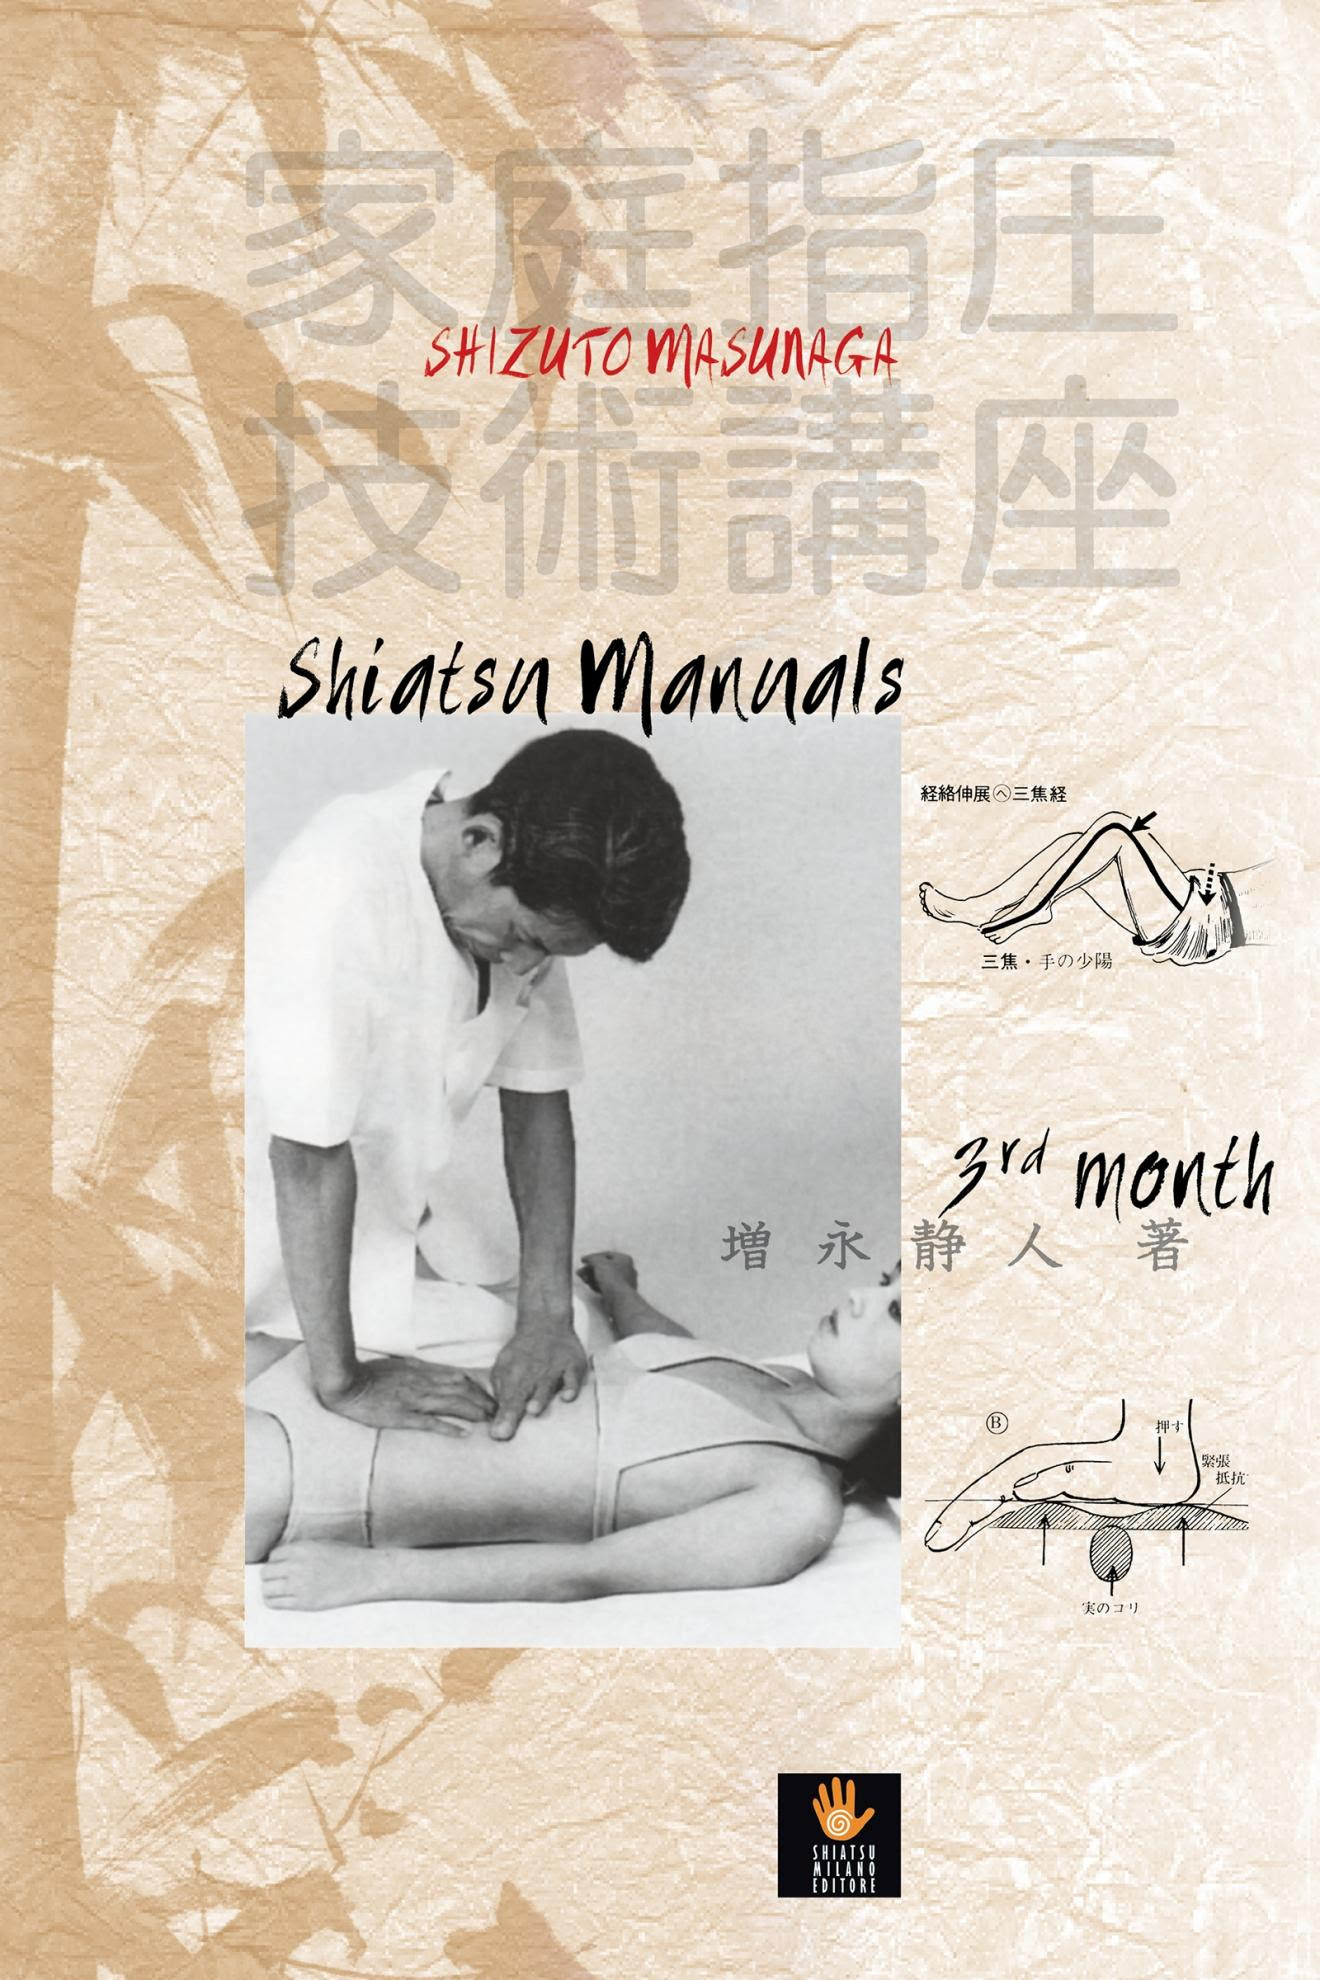 Masunaga Shiatsu 1st Manuals: 1st Month